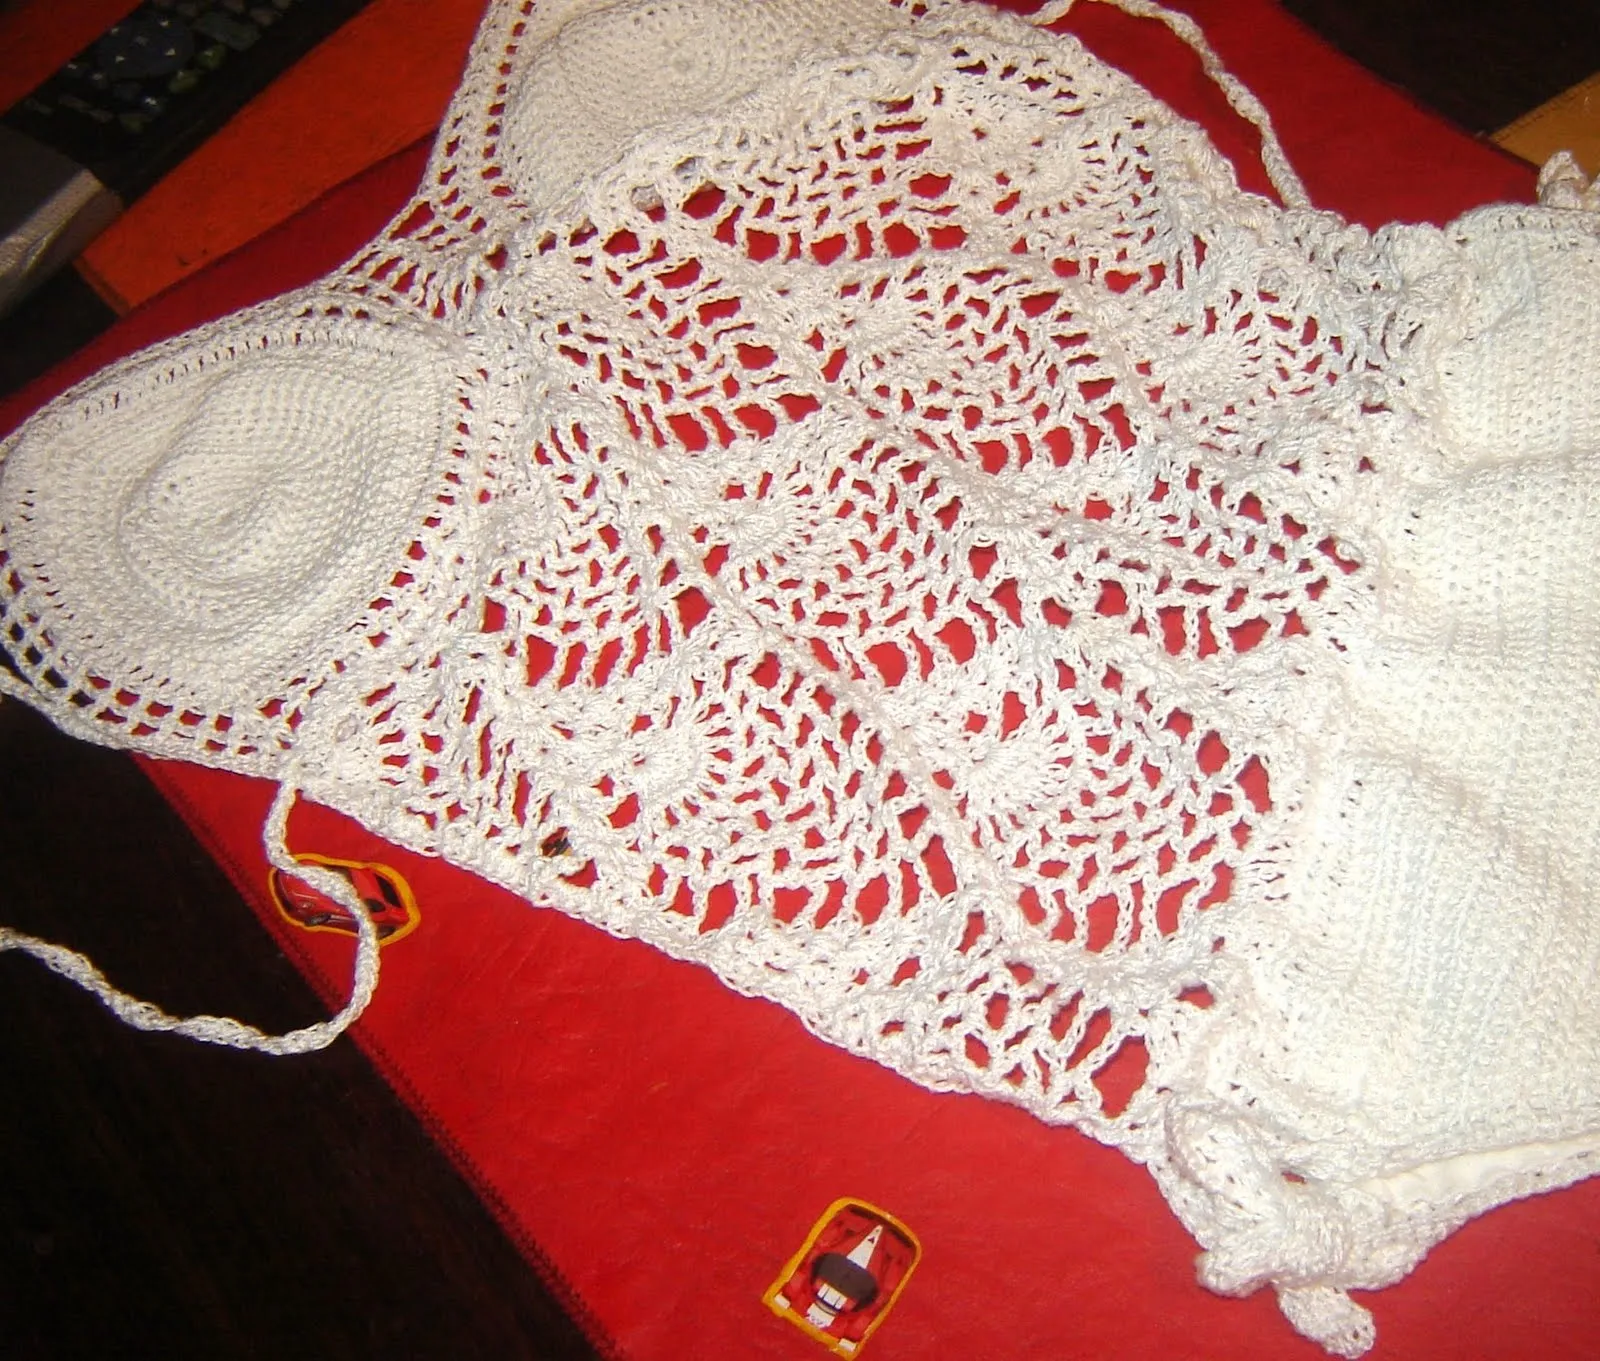 este trikini tejido en crochet en sagrado blanco,